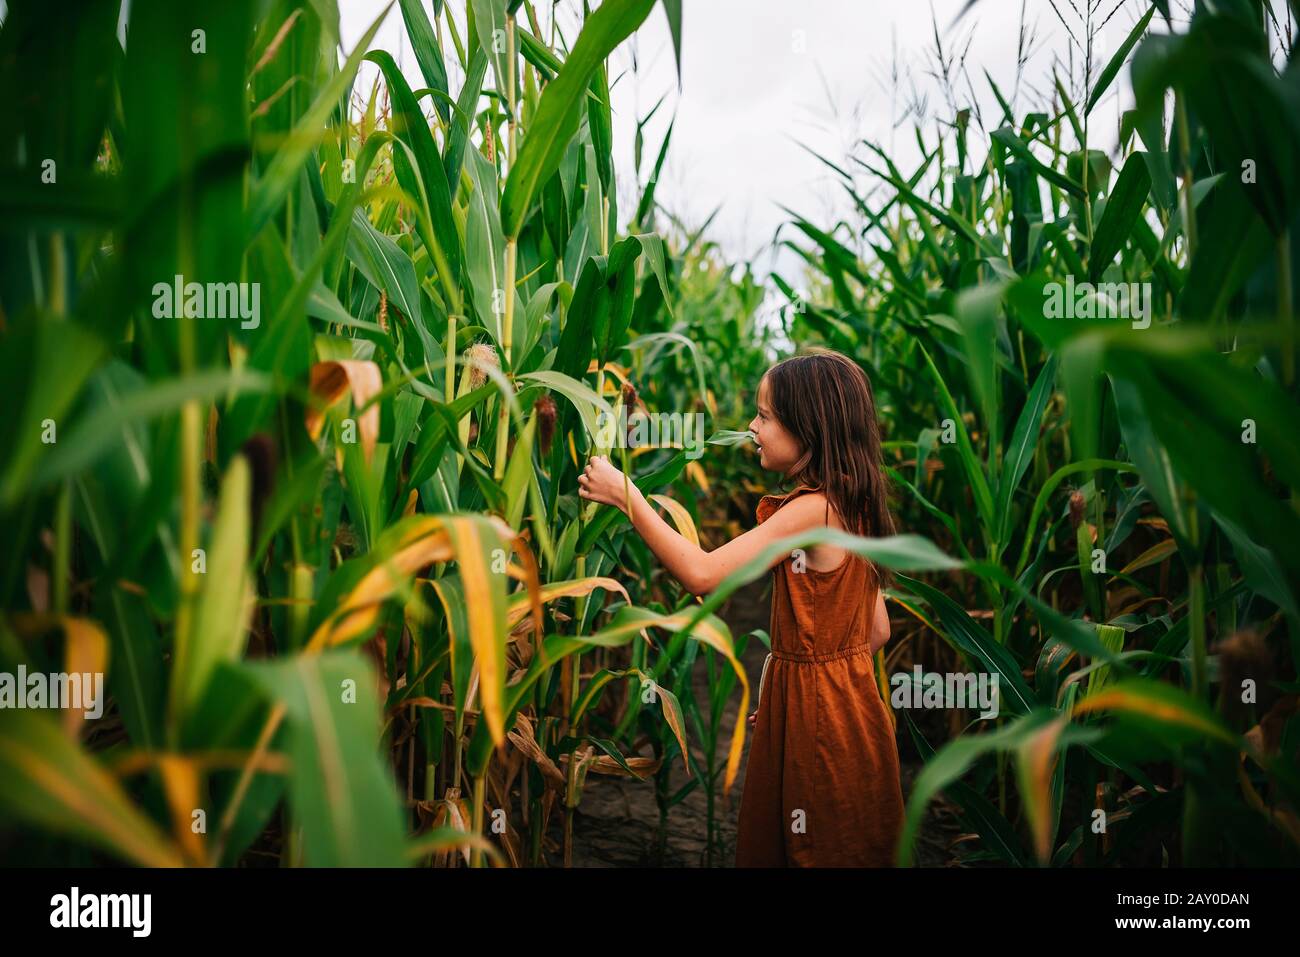 Porträt eines Mädchens in einem Maisfeld, das eine Pflanze berührt, USA Stockfoto